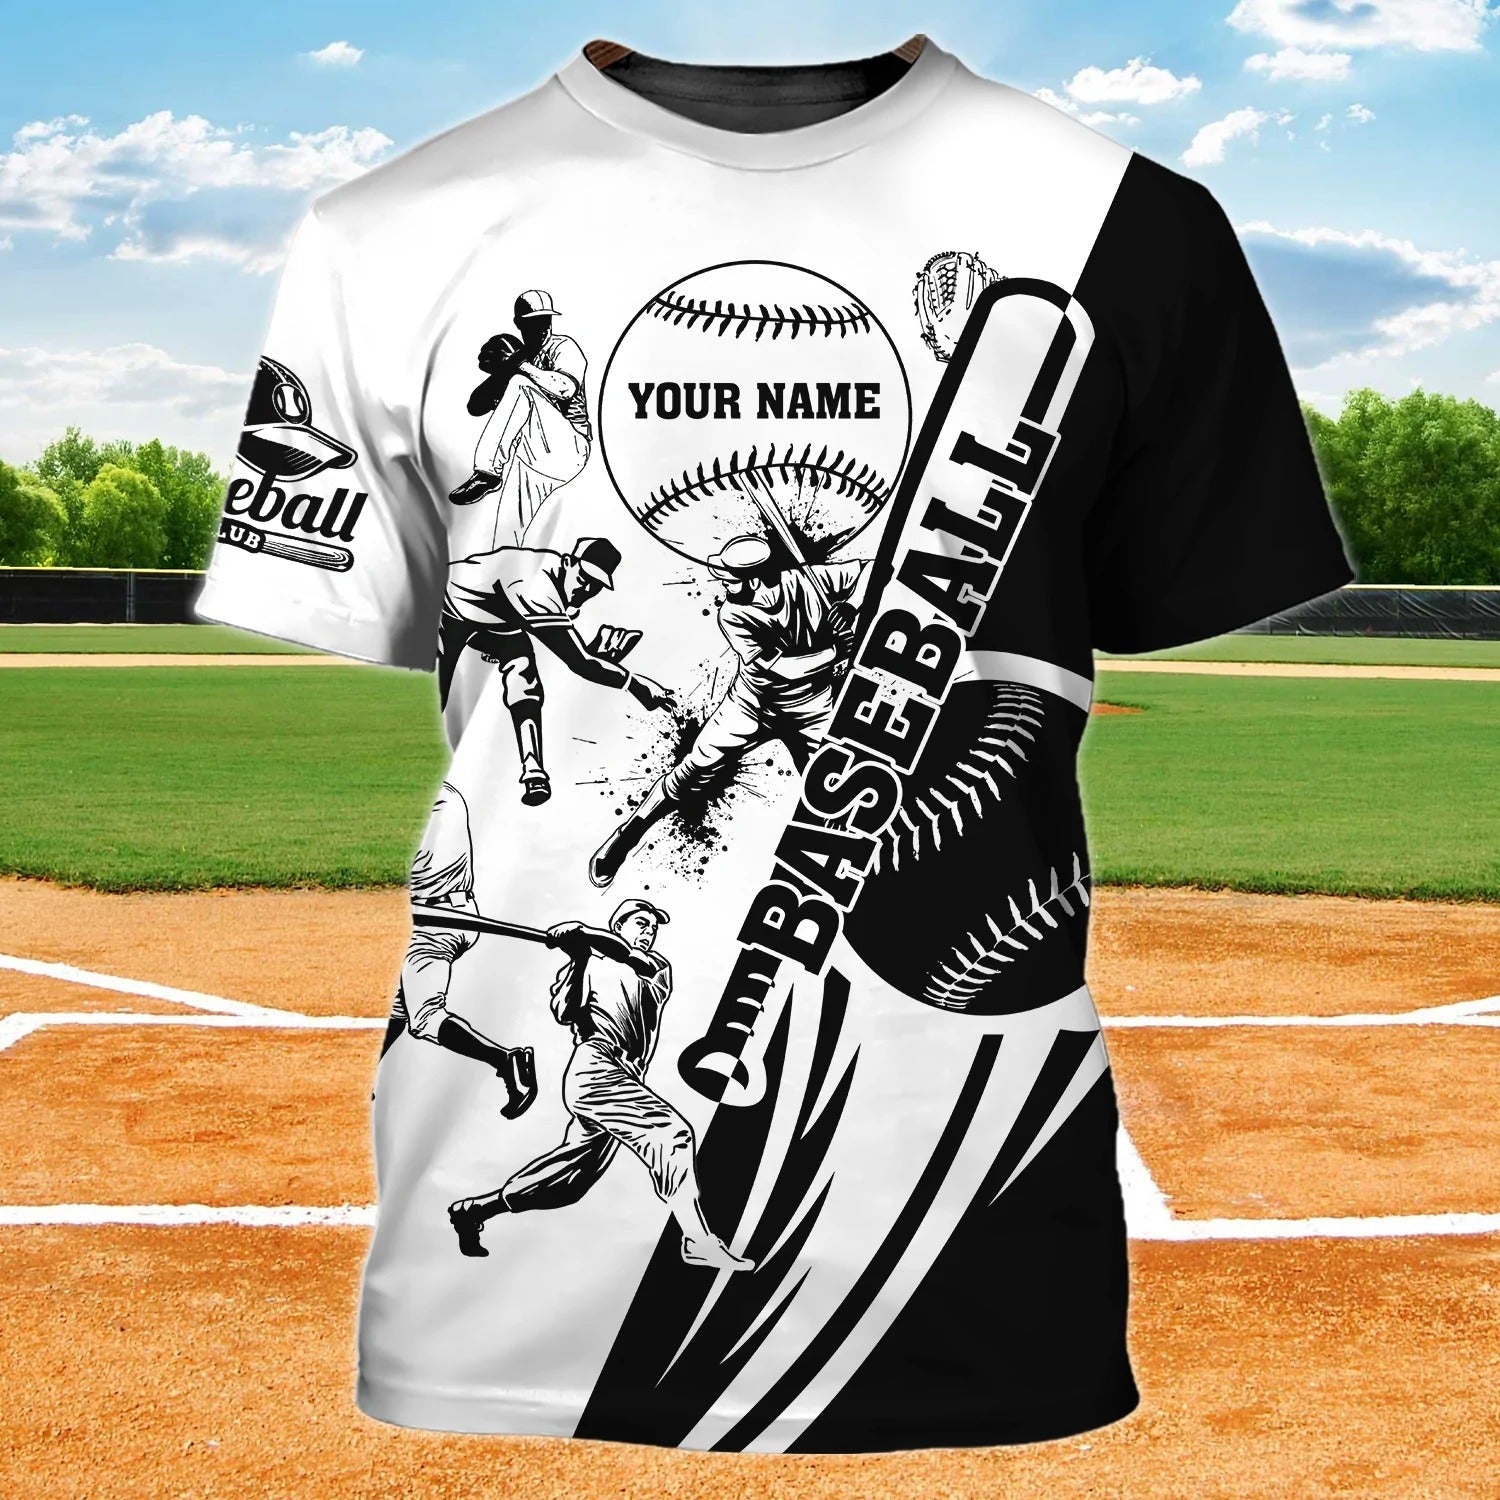 Human Made Duck Baseball T-shirt - Customon